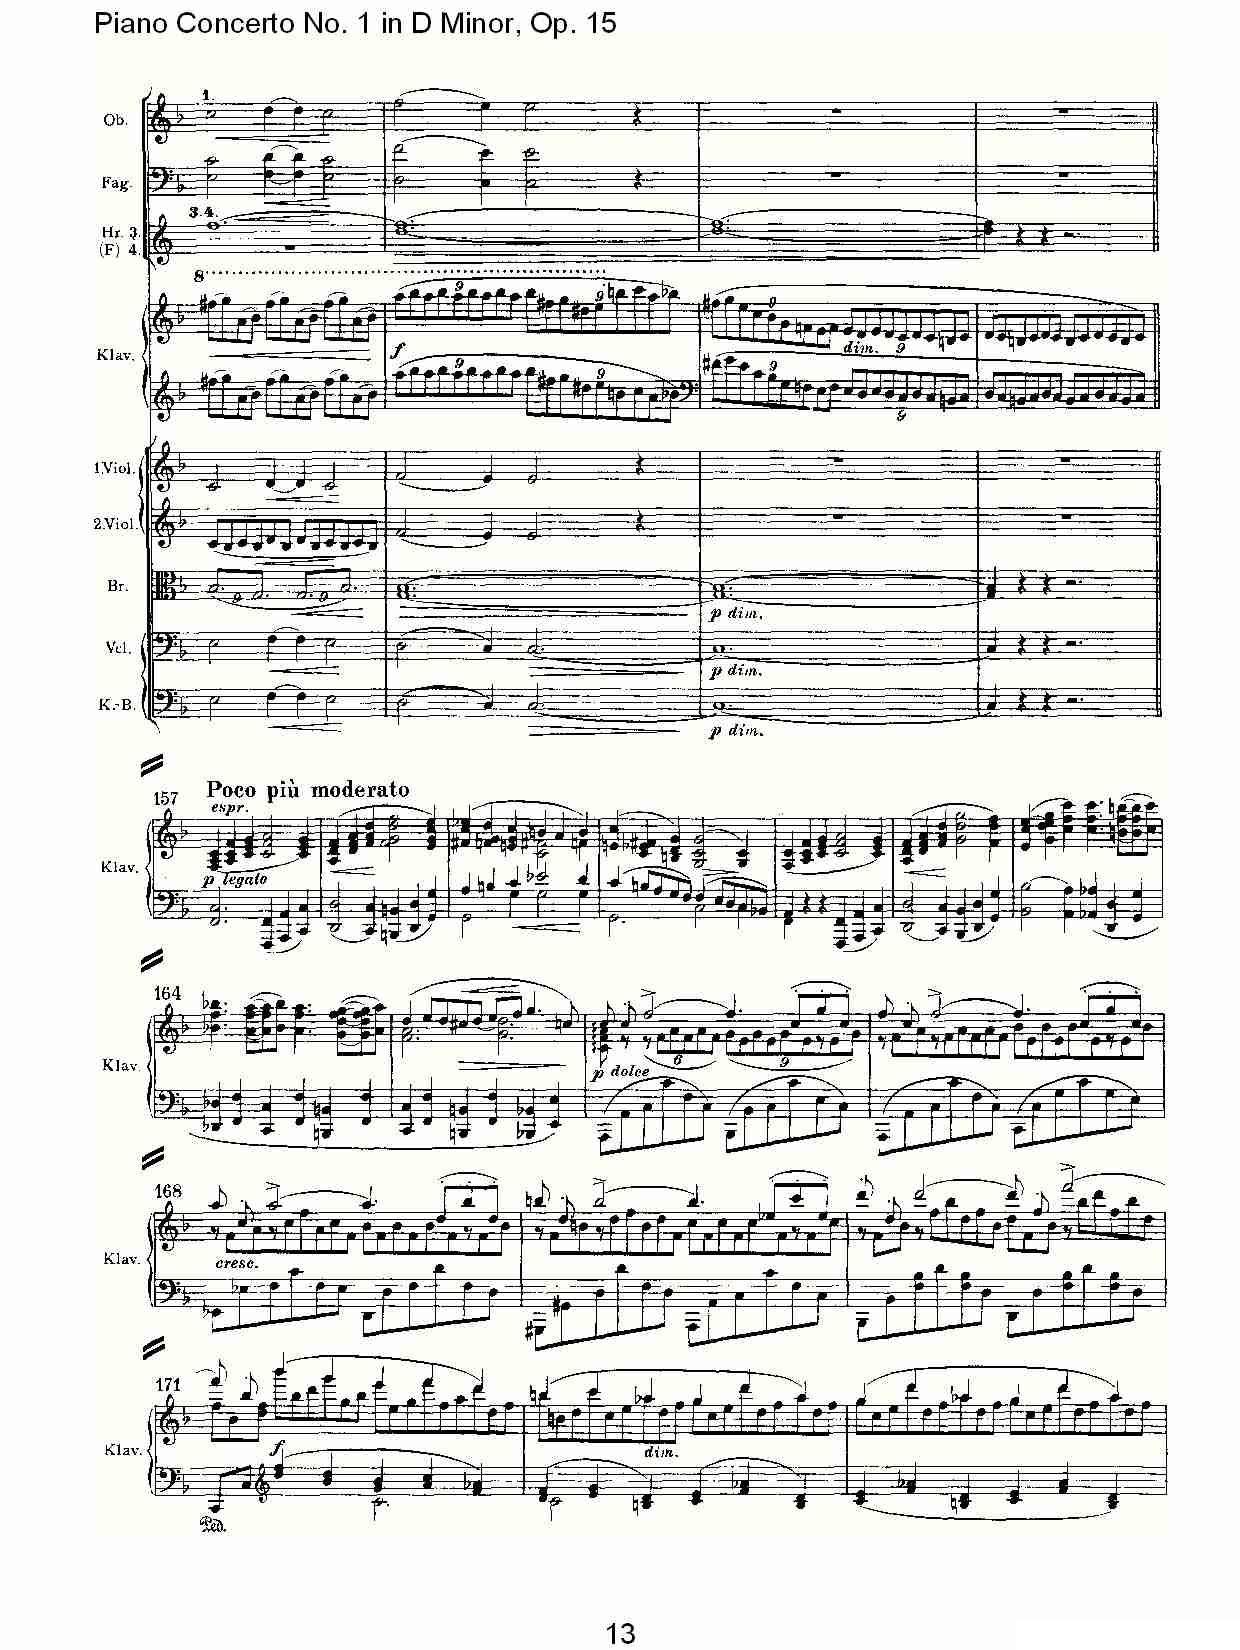 D小调钢琴第一协奏曲, Op.15第一乐章（一）钢琴曲谱（图13）